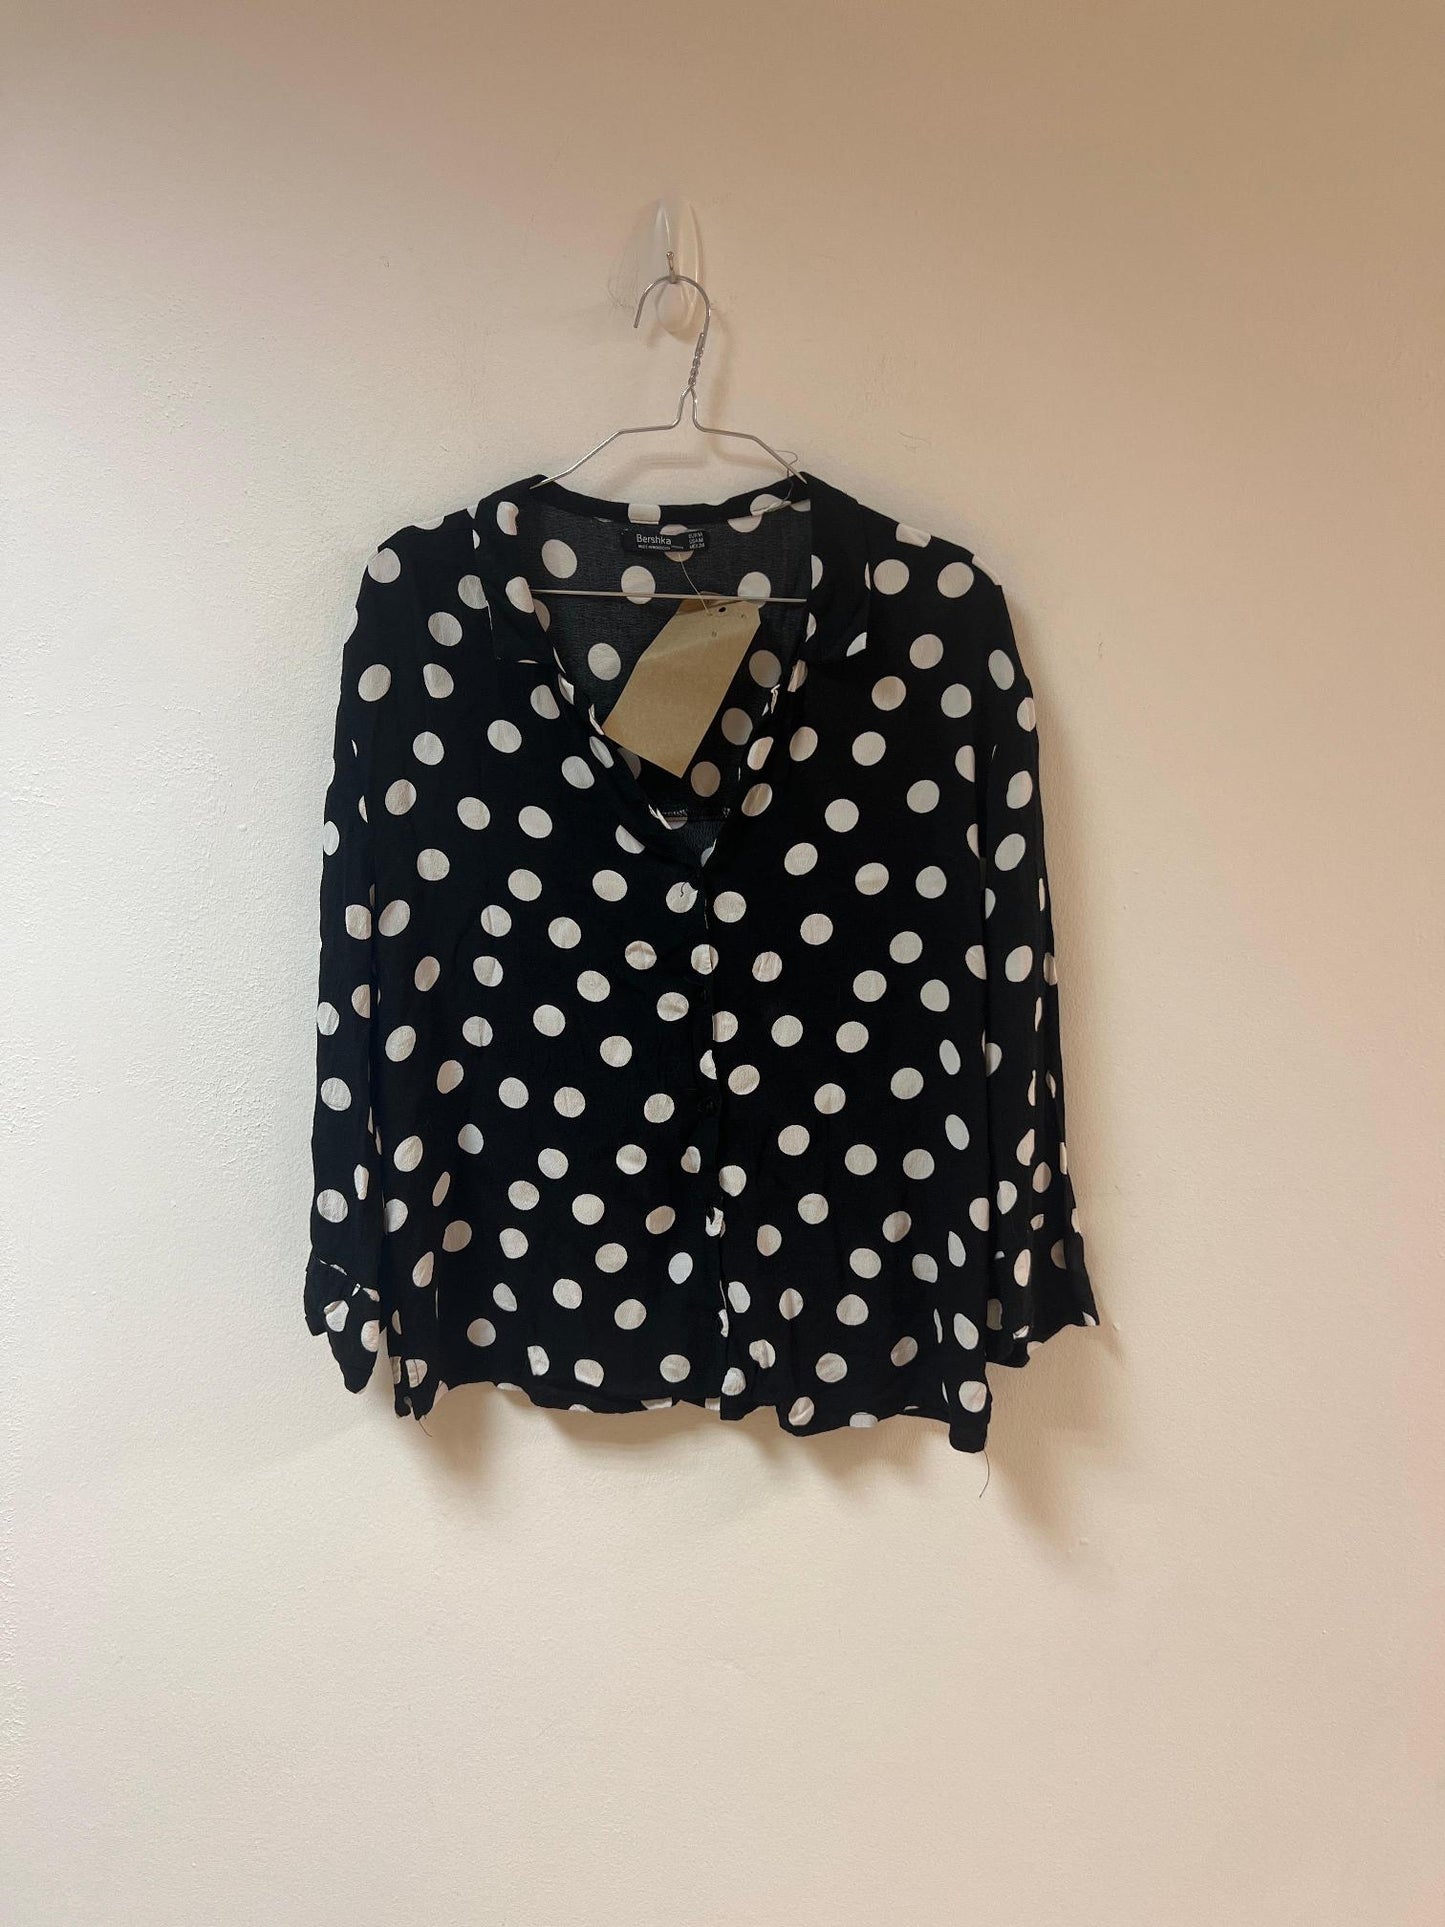 Black Polka Dot Button Up Shirt, Bershka, Size 10